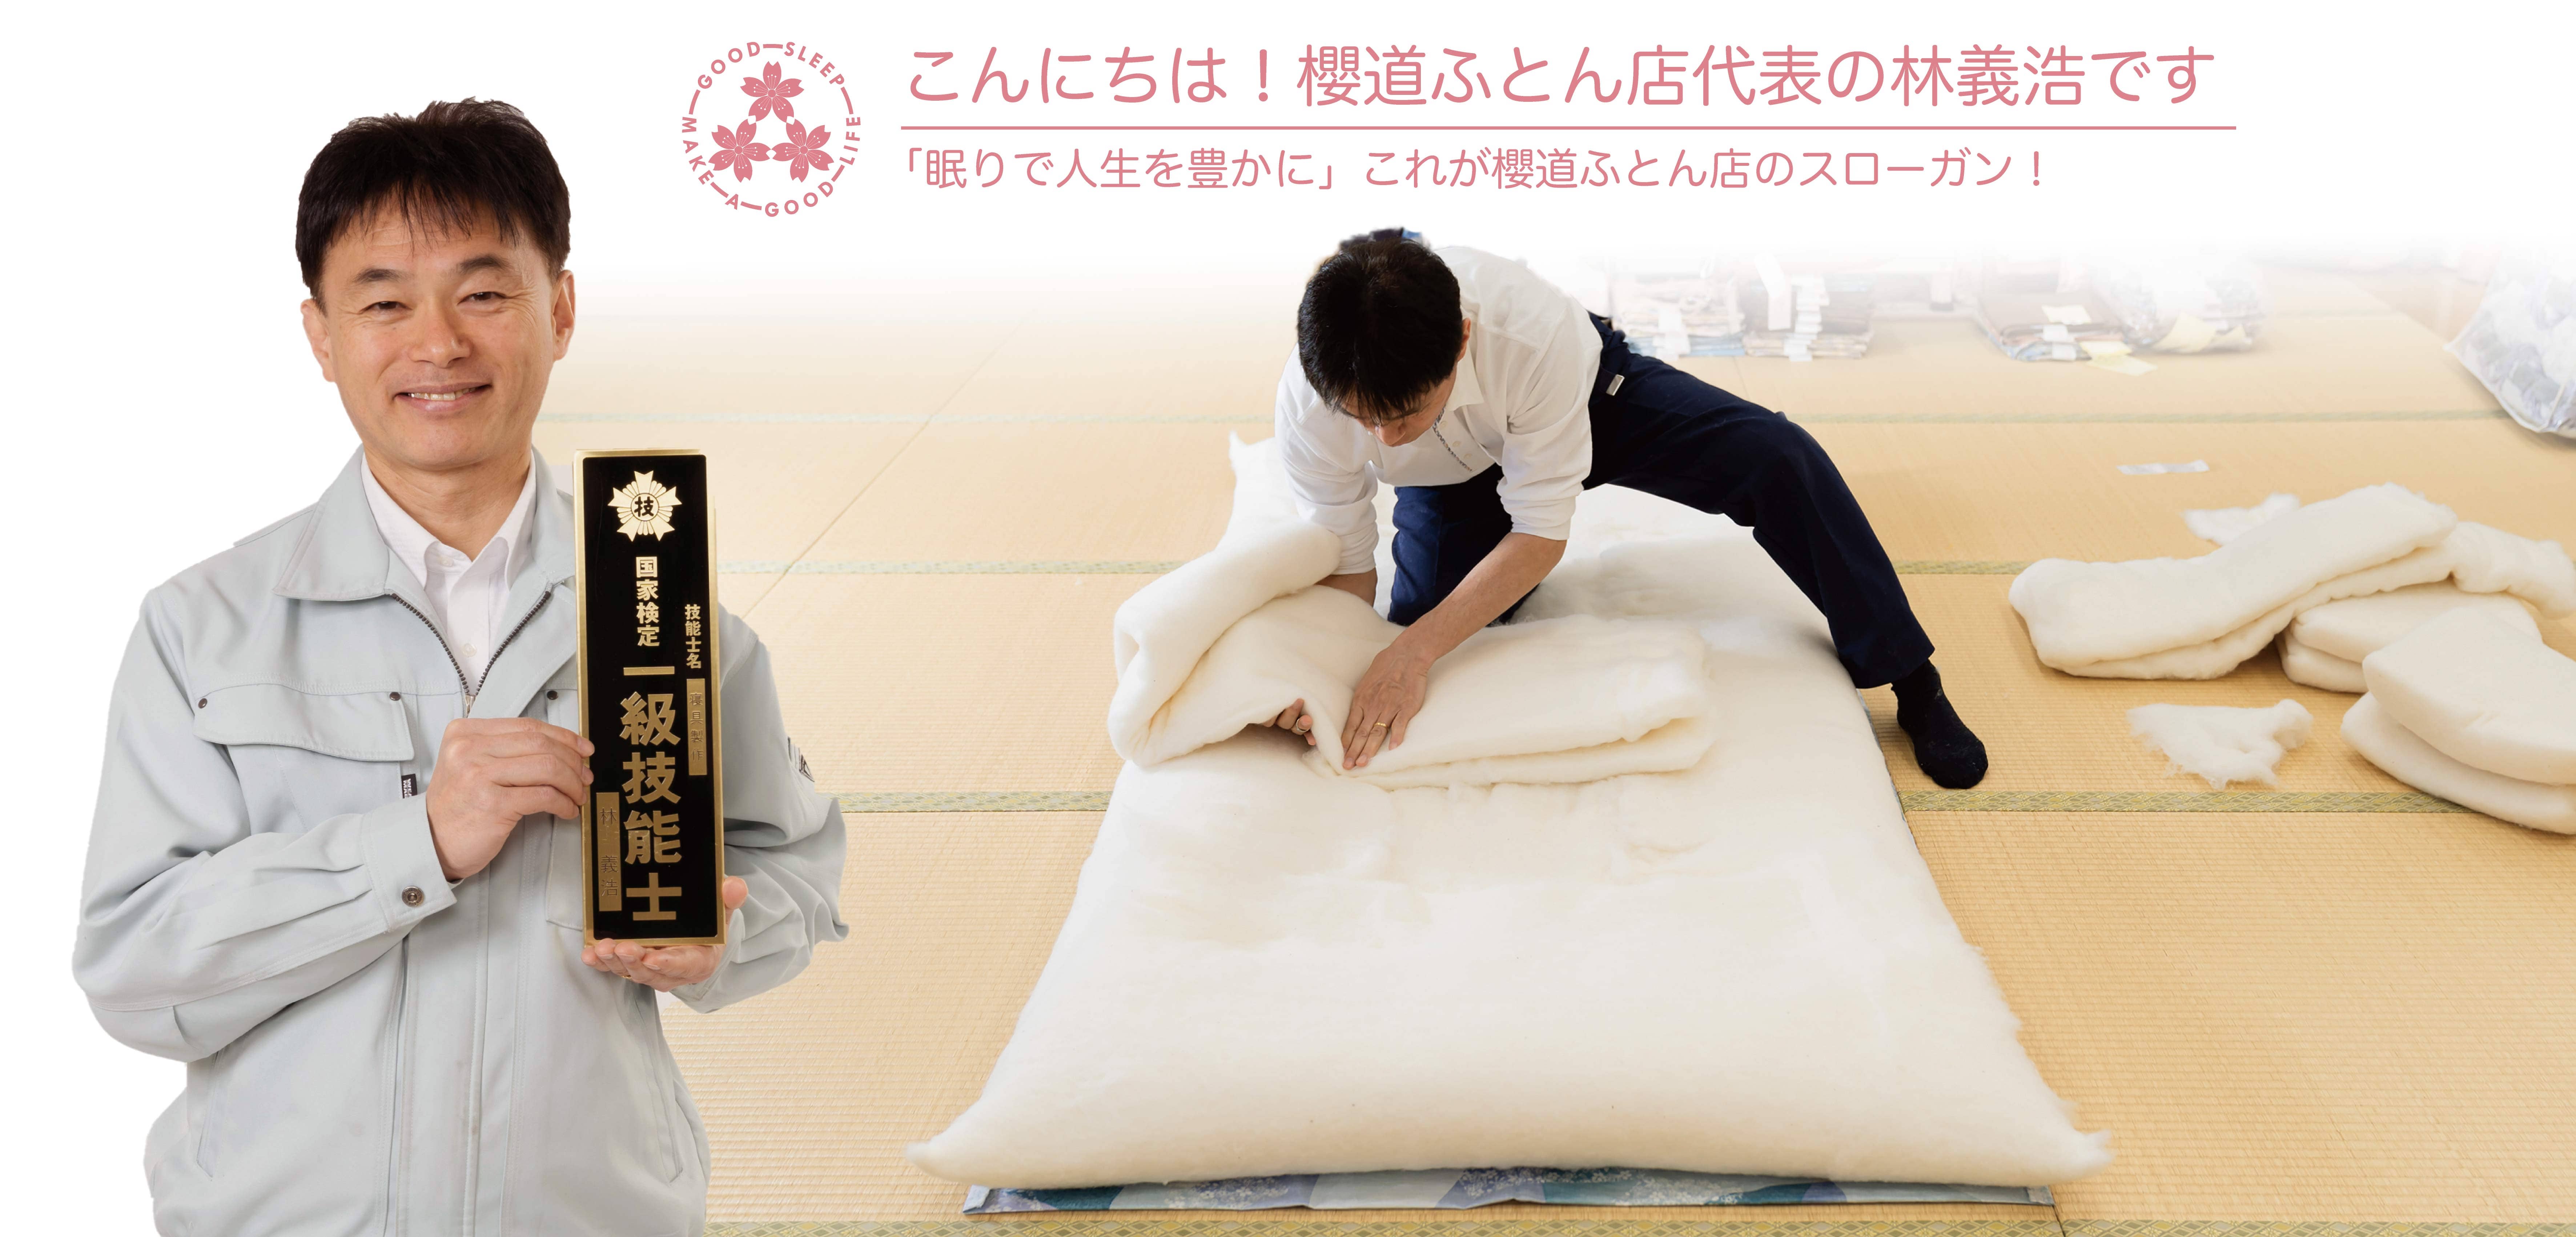 健康寝具の製造直販店 富士山の麓の布団屋 櫻道ふとん店の社長紹介